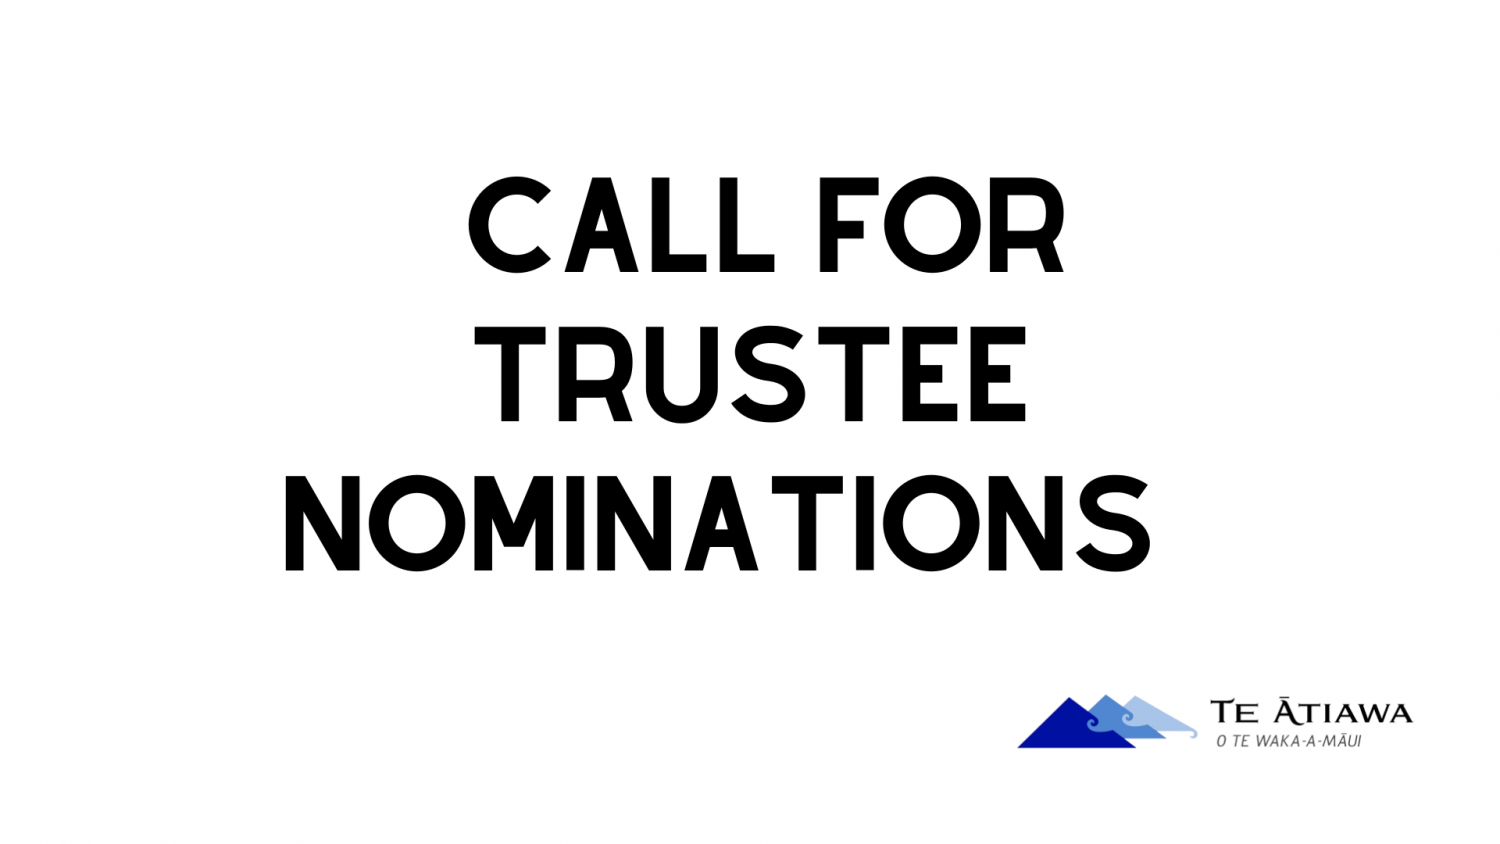 Trustee nominations open now! 